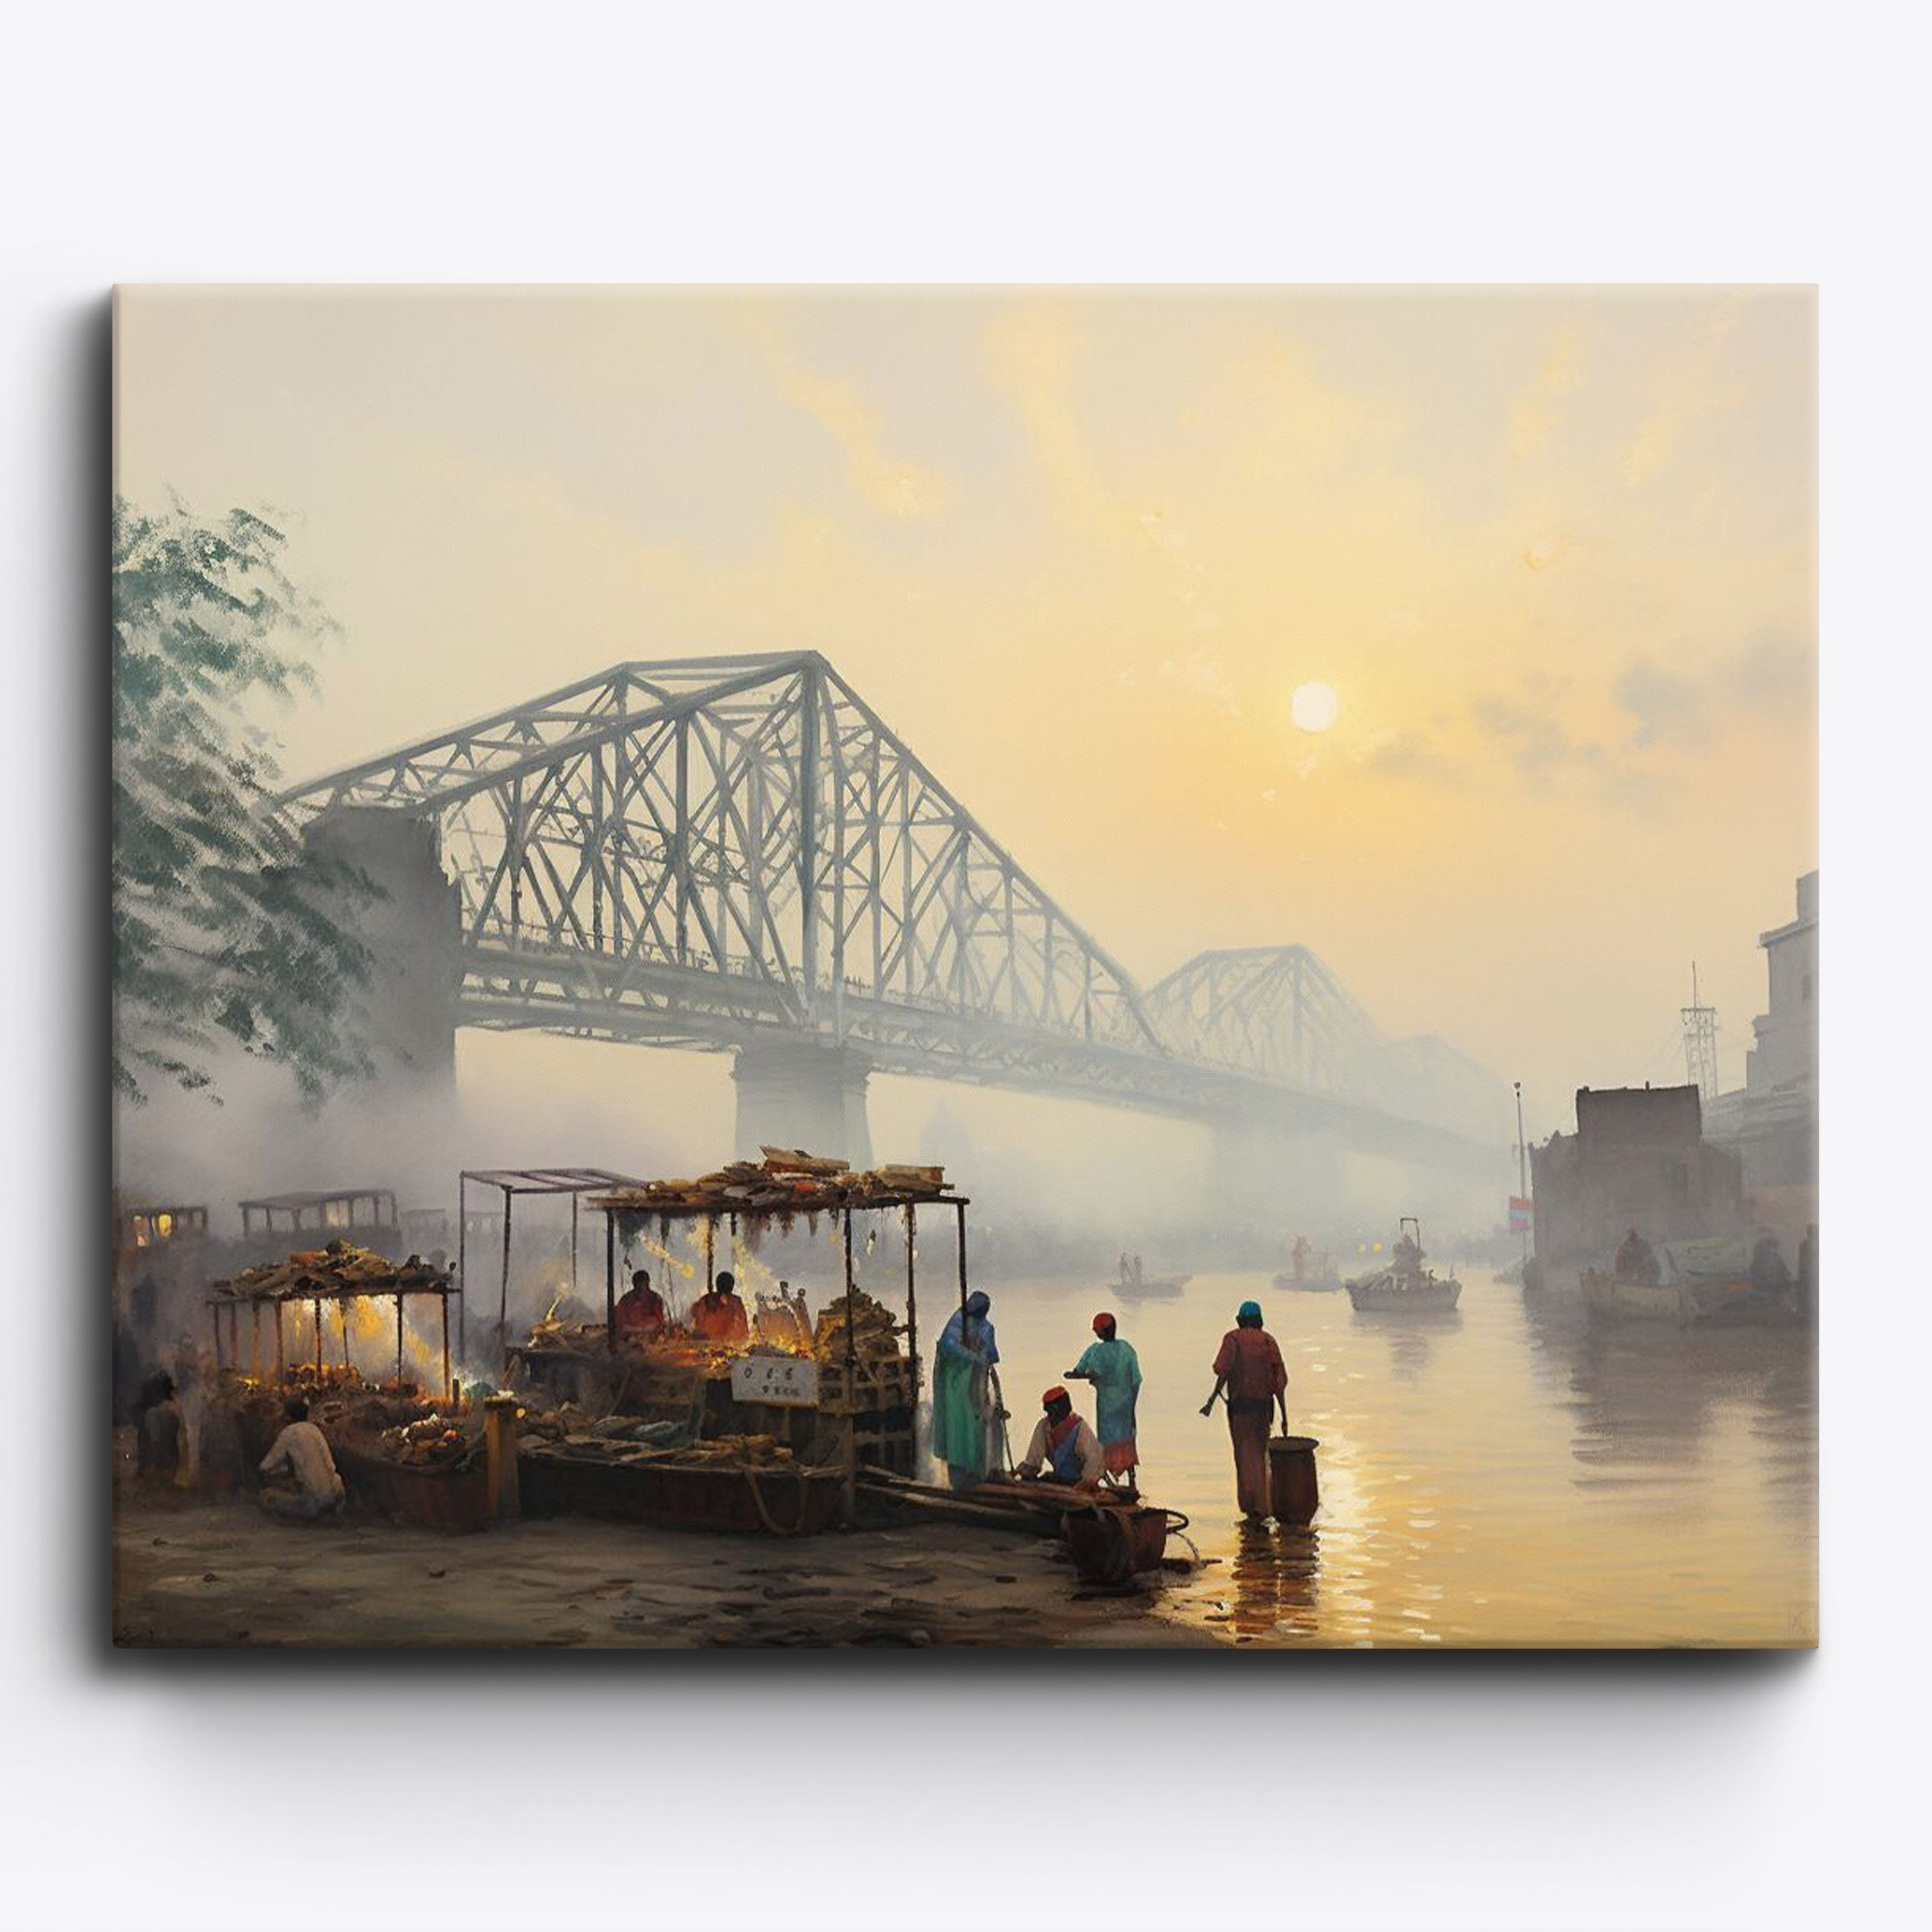 Kolkata Howrah Bridge No Frame